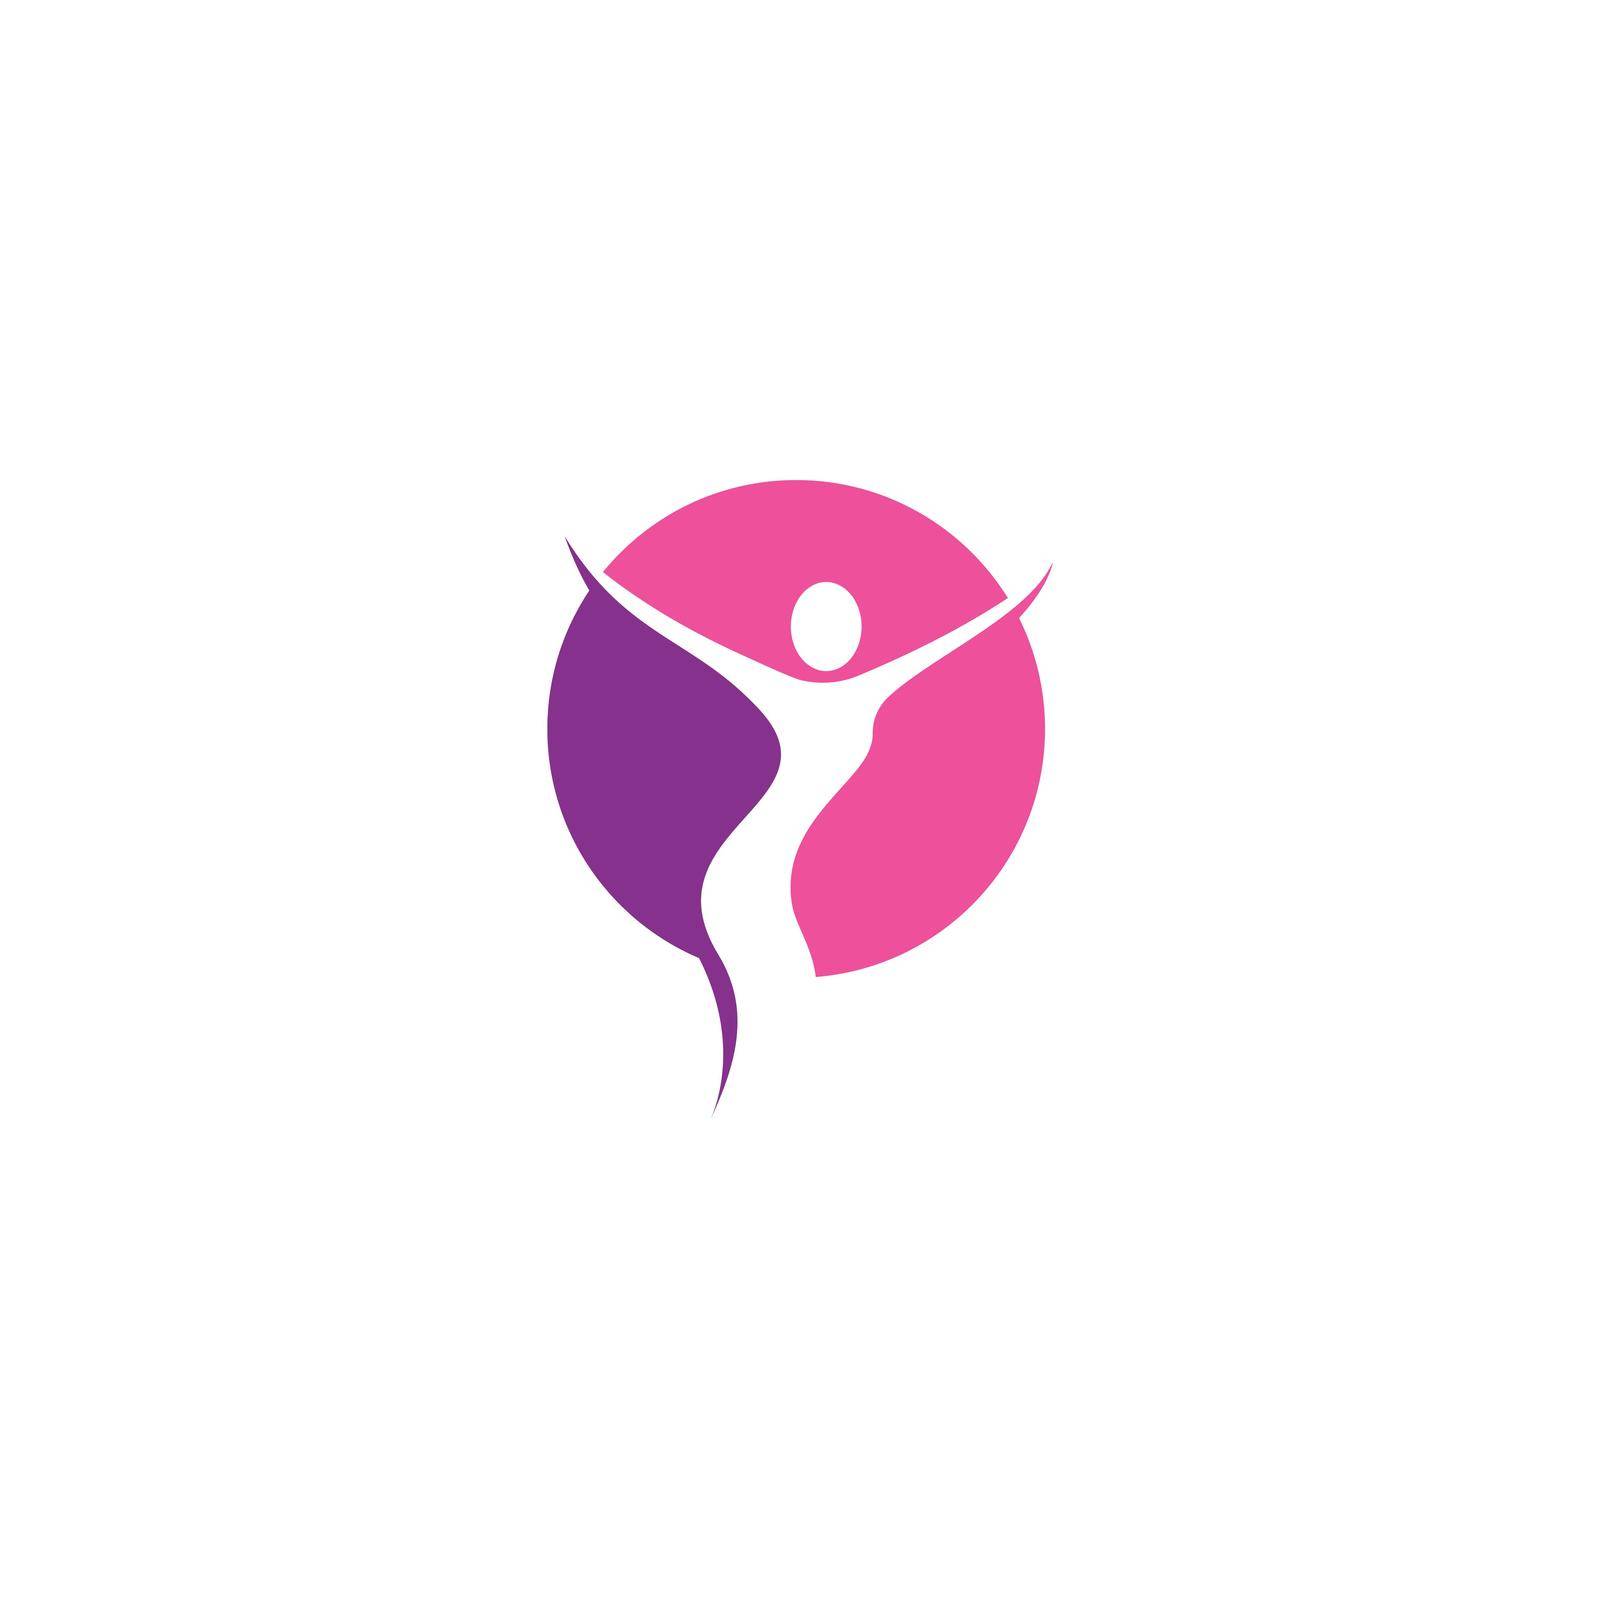 Woman logo by awk